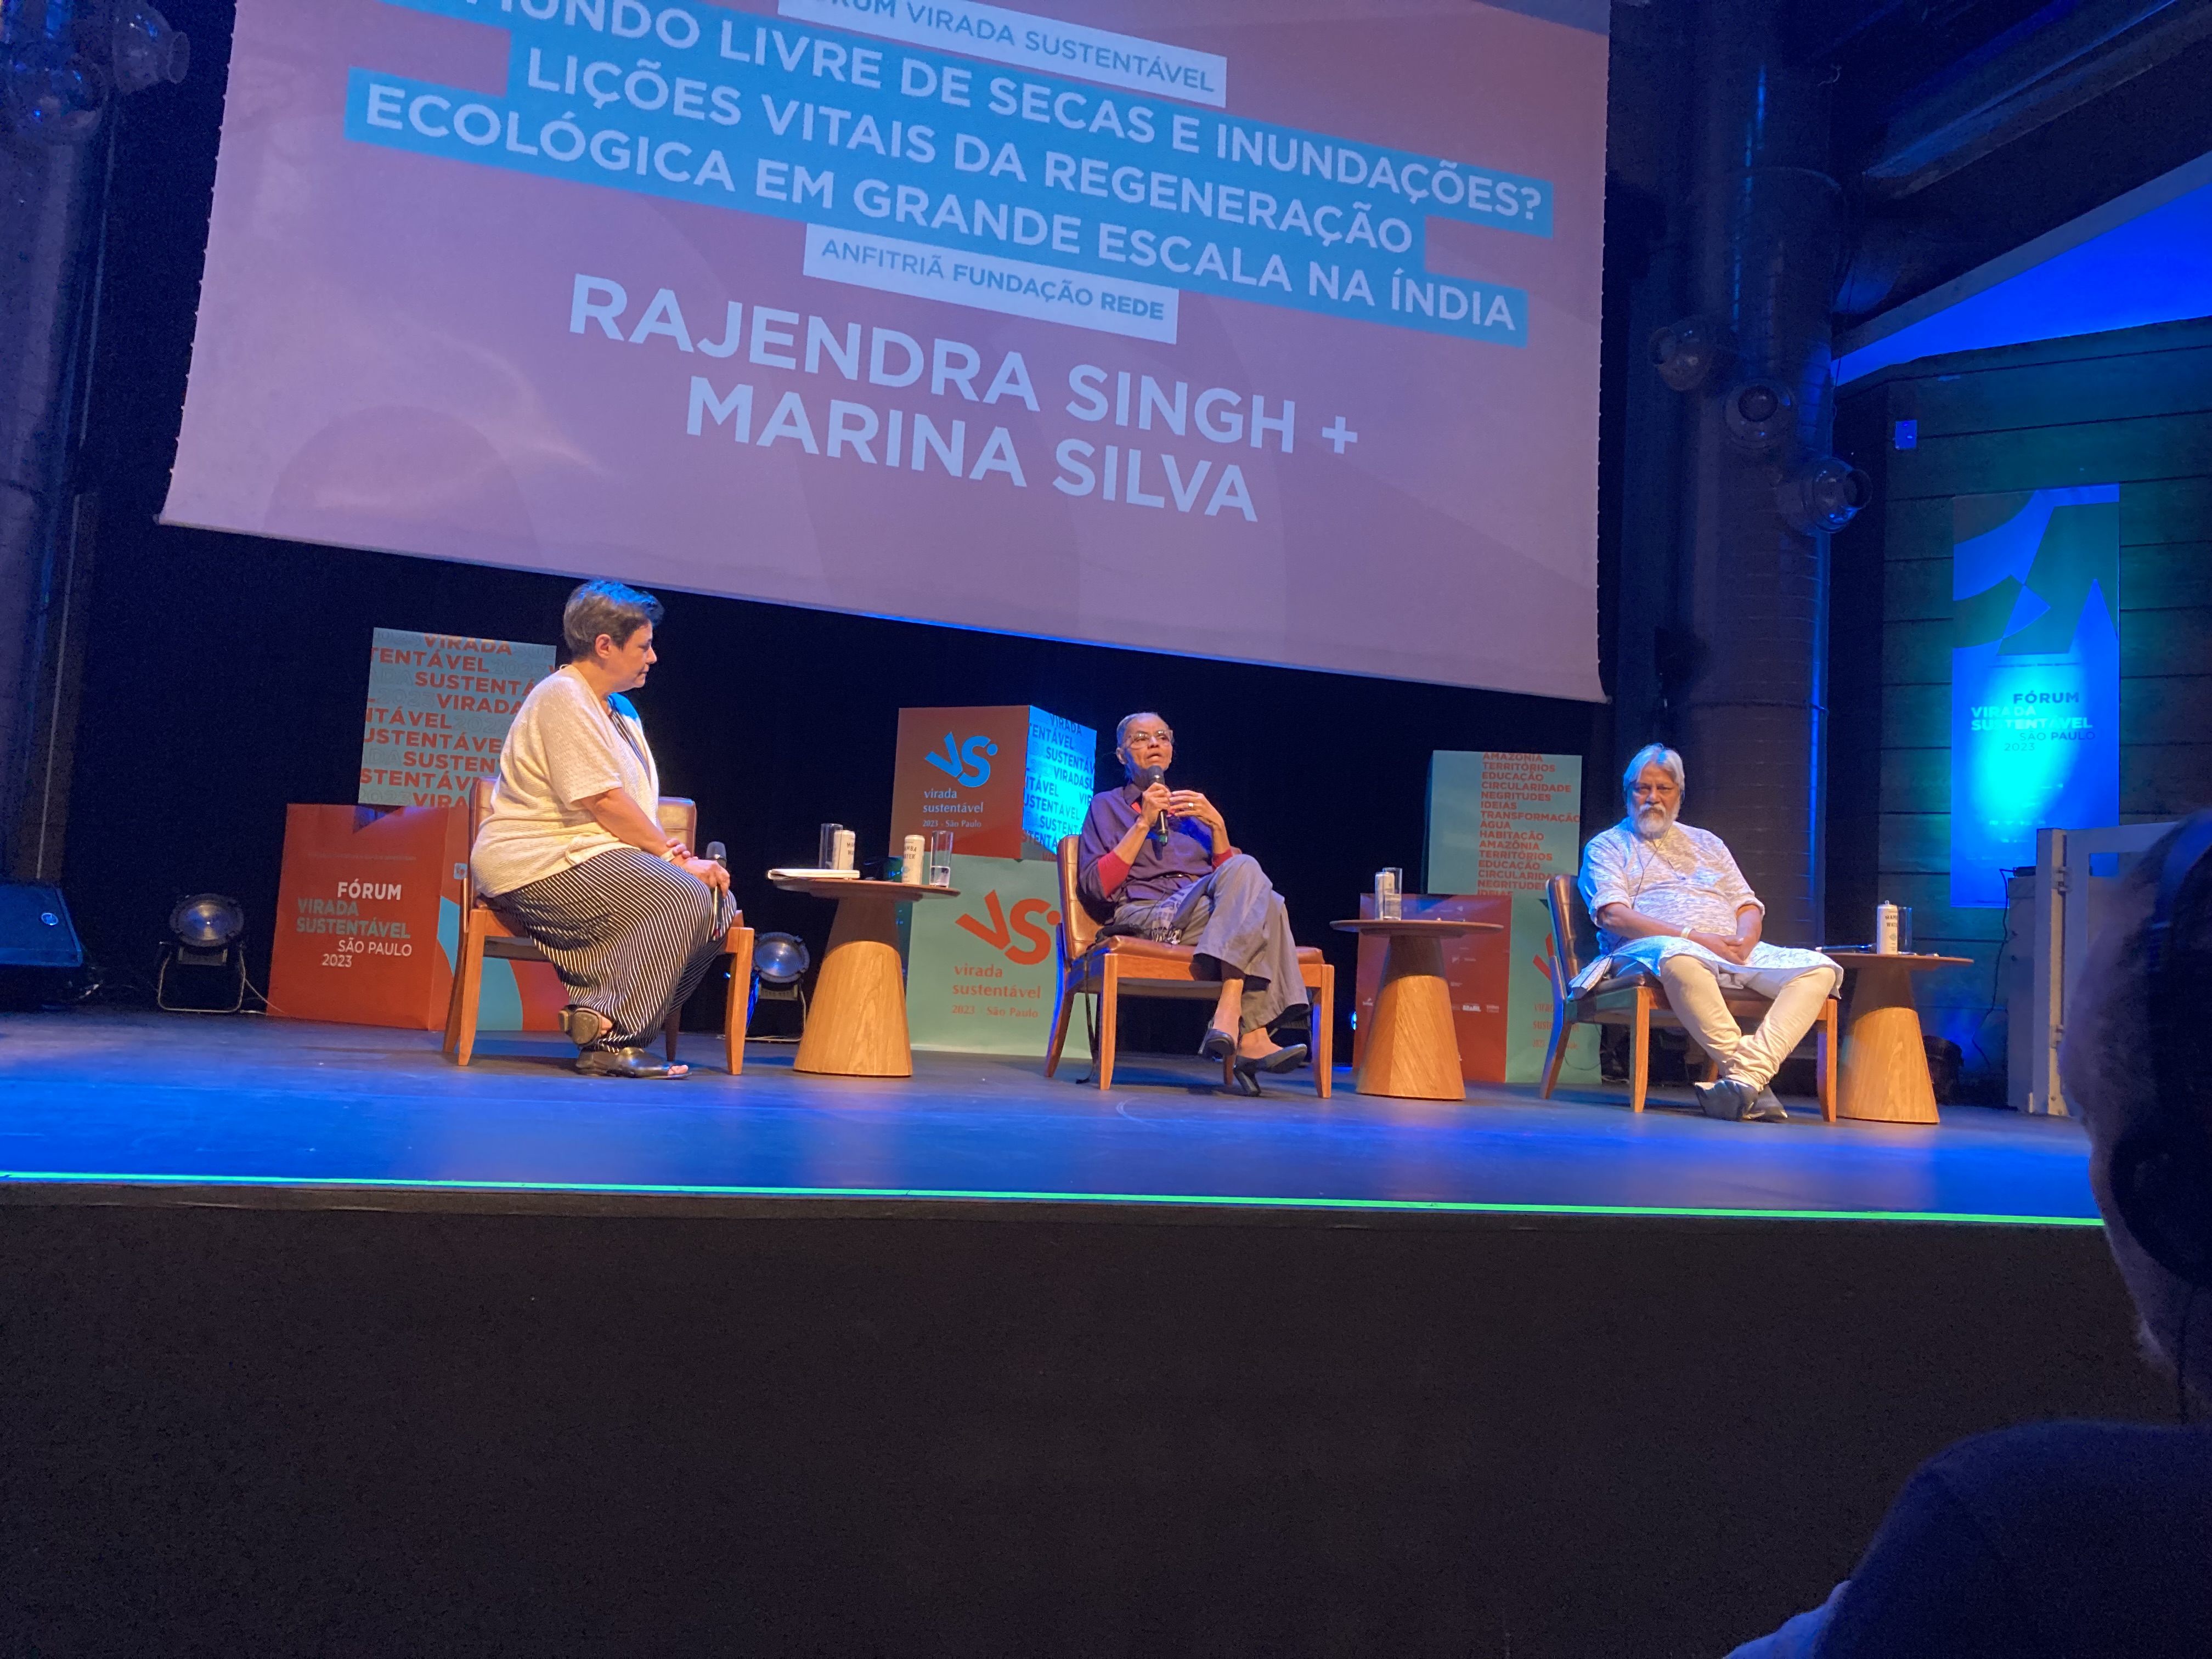 Marina Silva e Rajendra Singh conversam sobre água e clima na Virada Sustentável